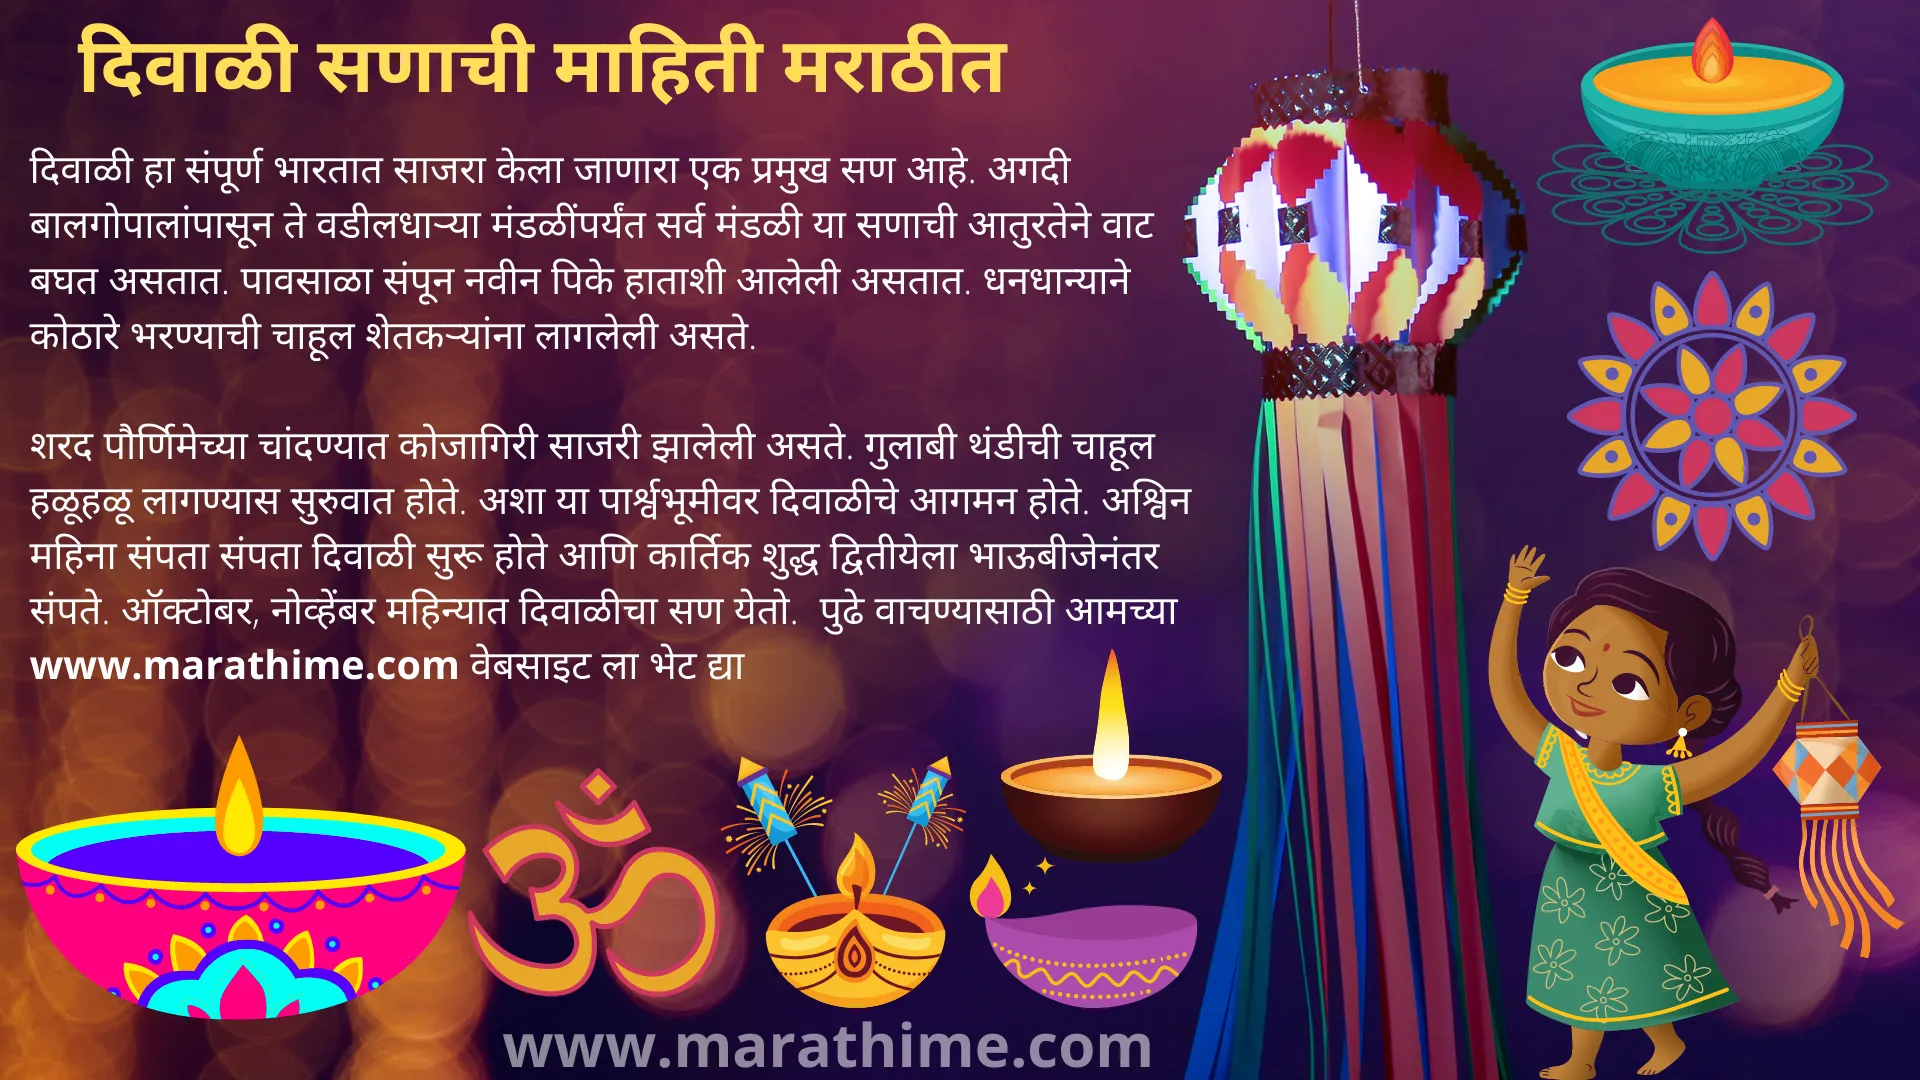 दिवाळी सणाची माहिती मराठीत-Diwali Information in Marathi